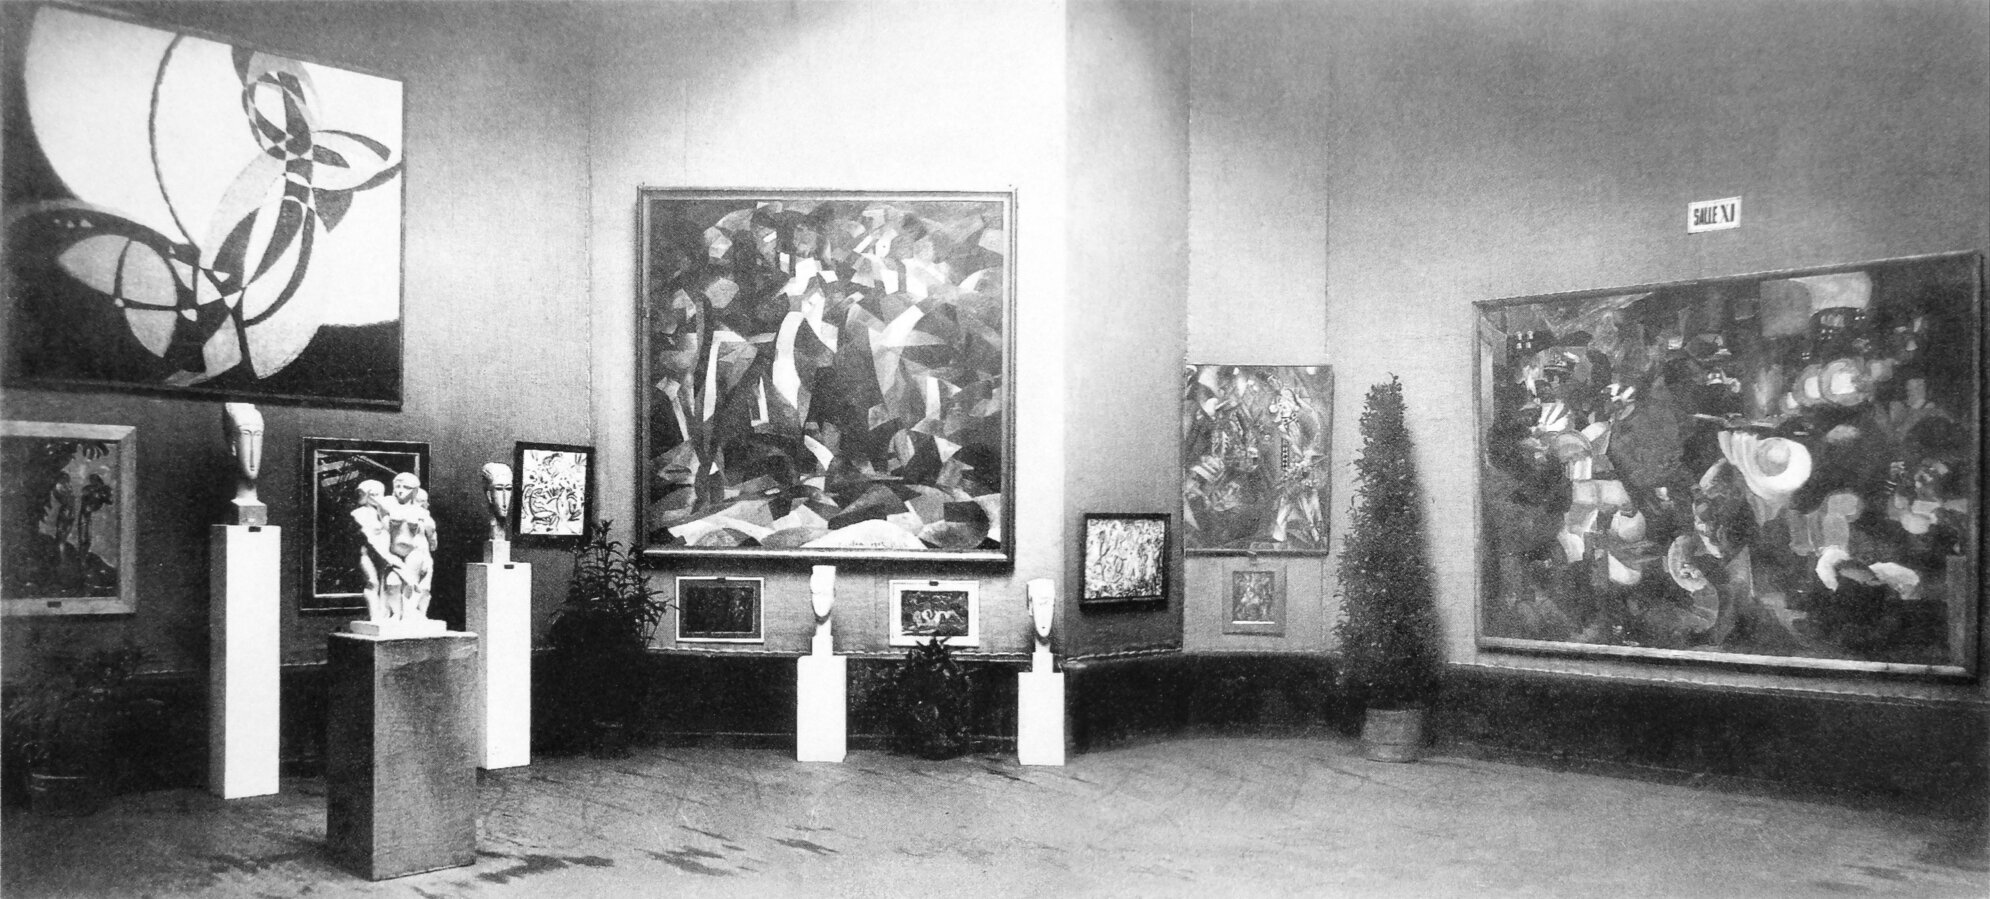 Modigliani négy szobrát állították ki 1912-ben a kubisták művei mellett a Salon d'Automne-on - forrás: wikipedia